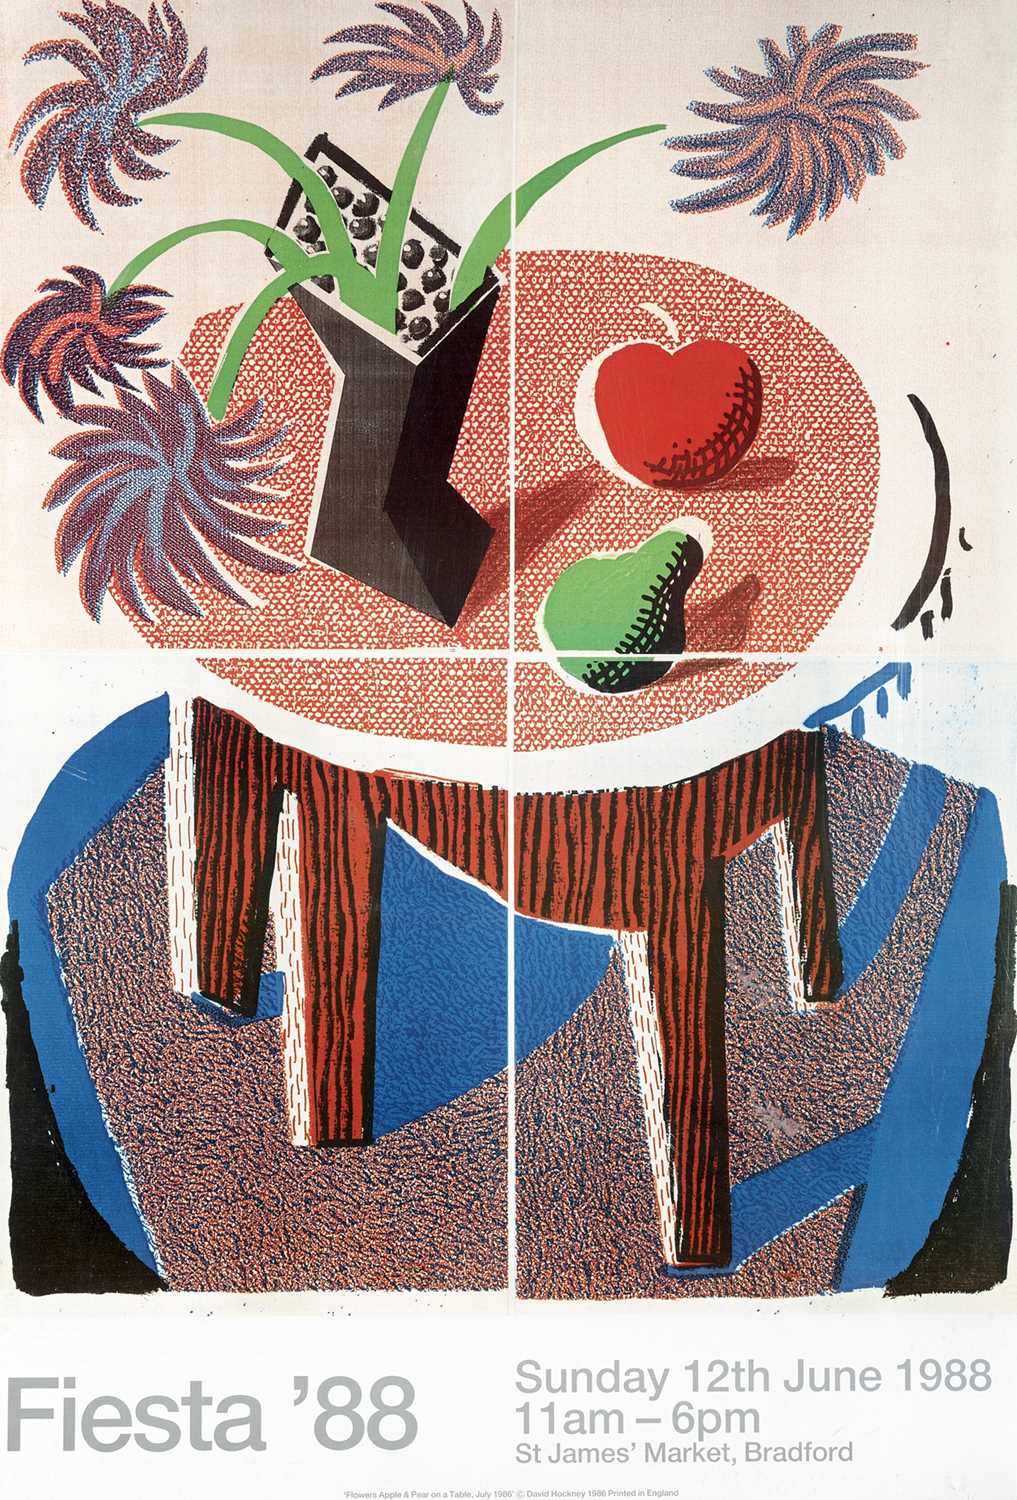 Lot 46 - David Hockney (British 1937-), 'Fiesta', 1988